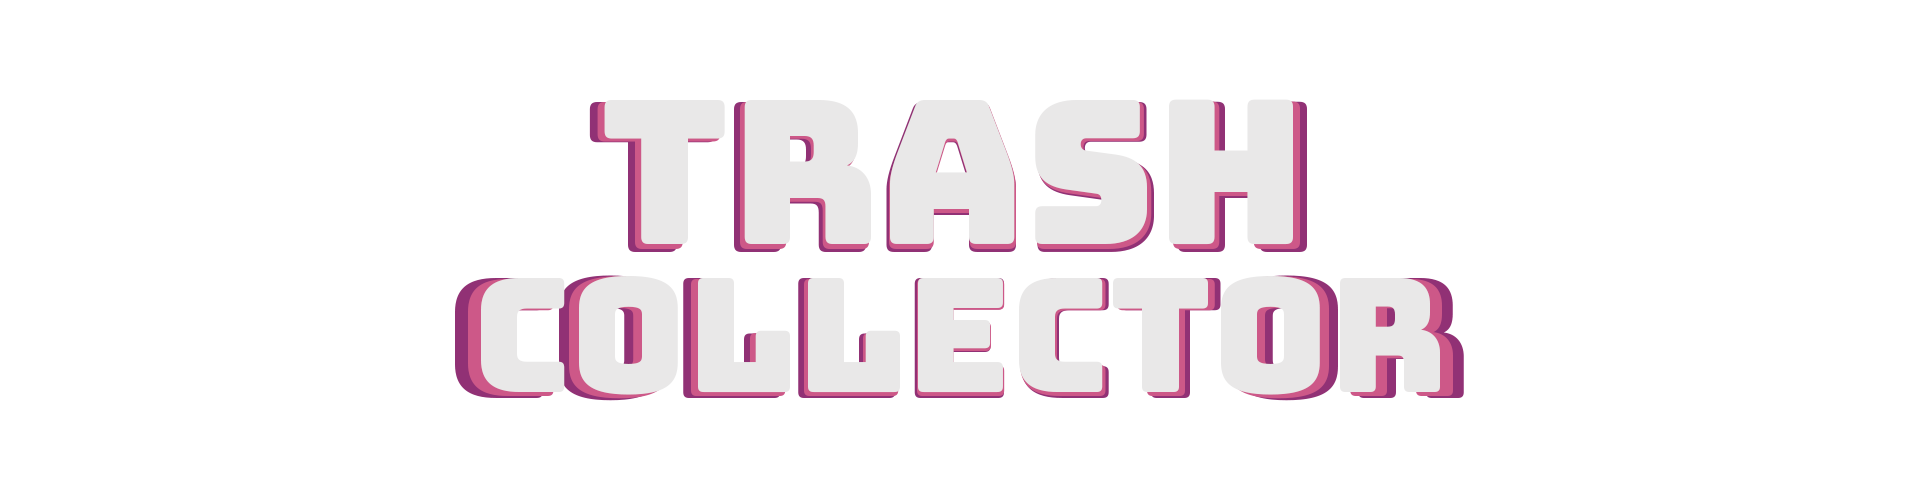 Trash Collector